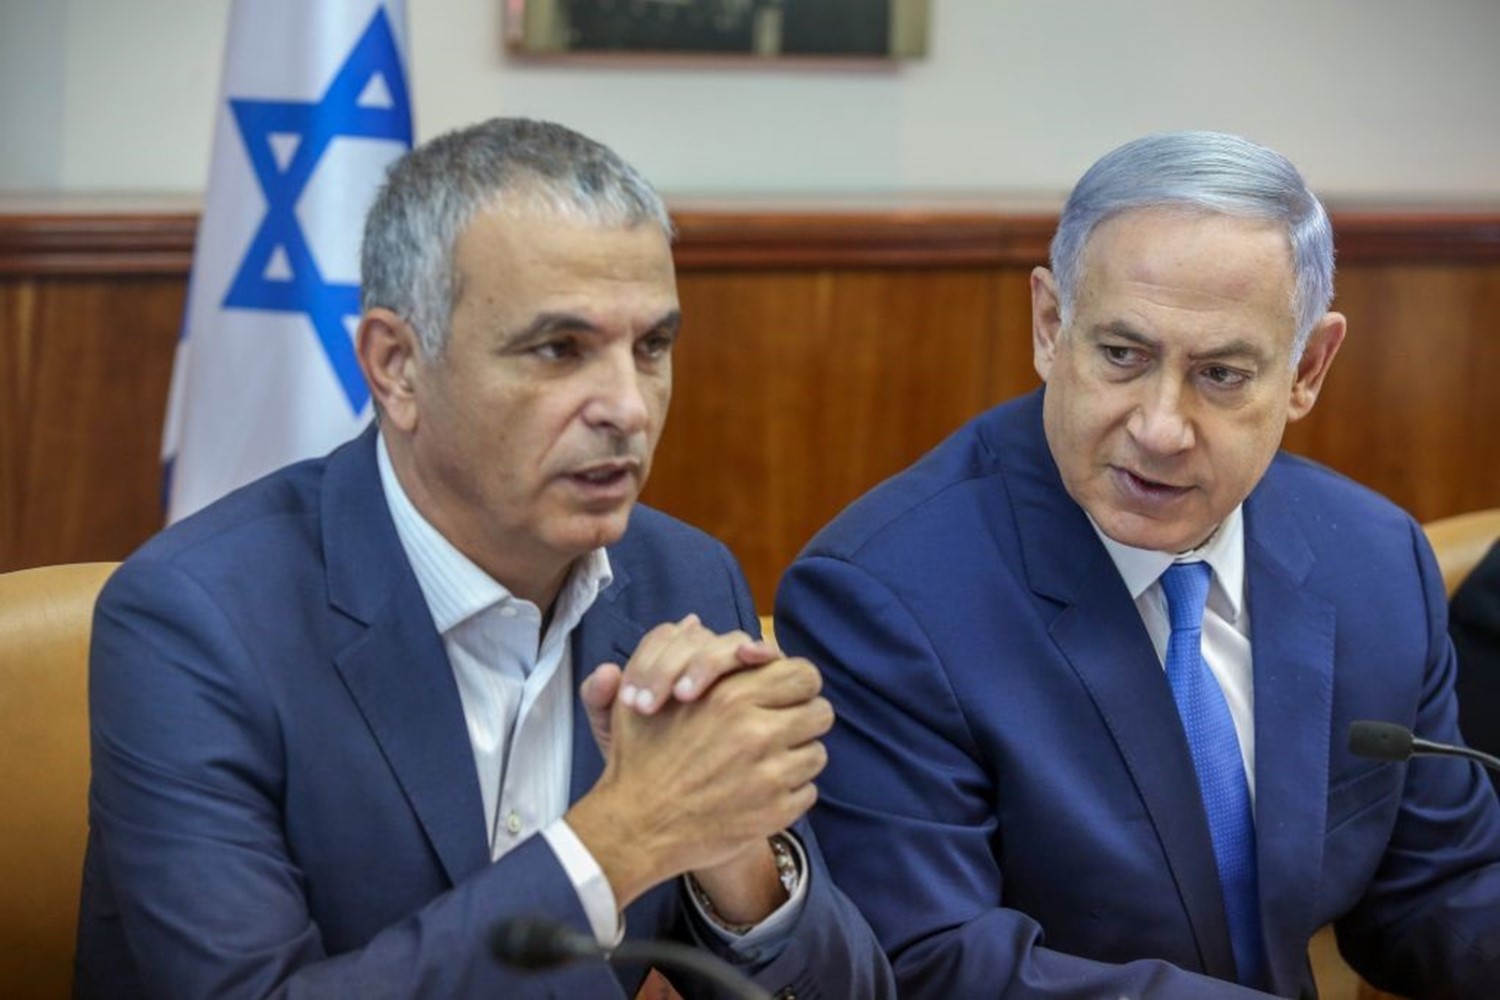 قرار إسرائيلي جديد بخصم الملايين من "المقاصة" ثمناً لكهرباء الضفة والقدس